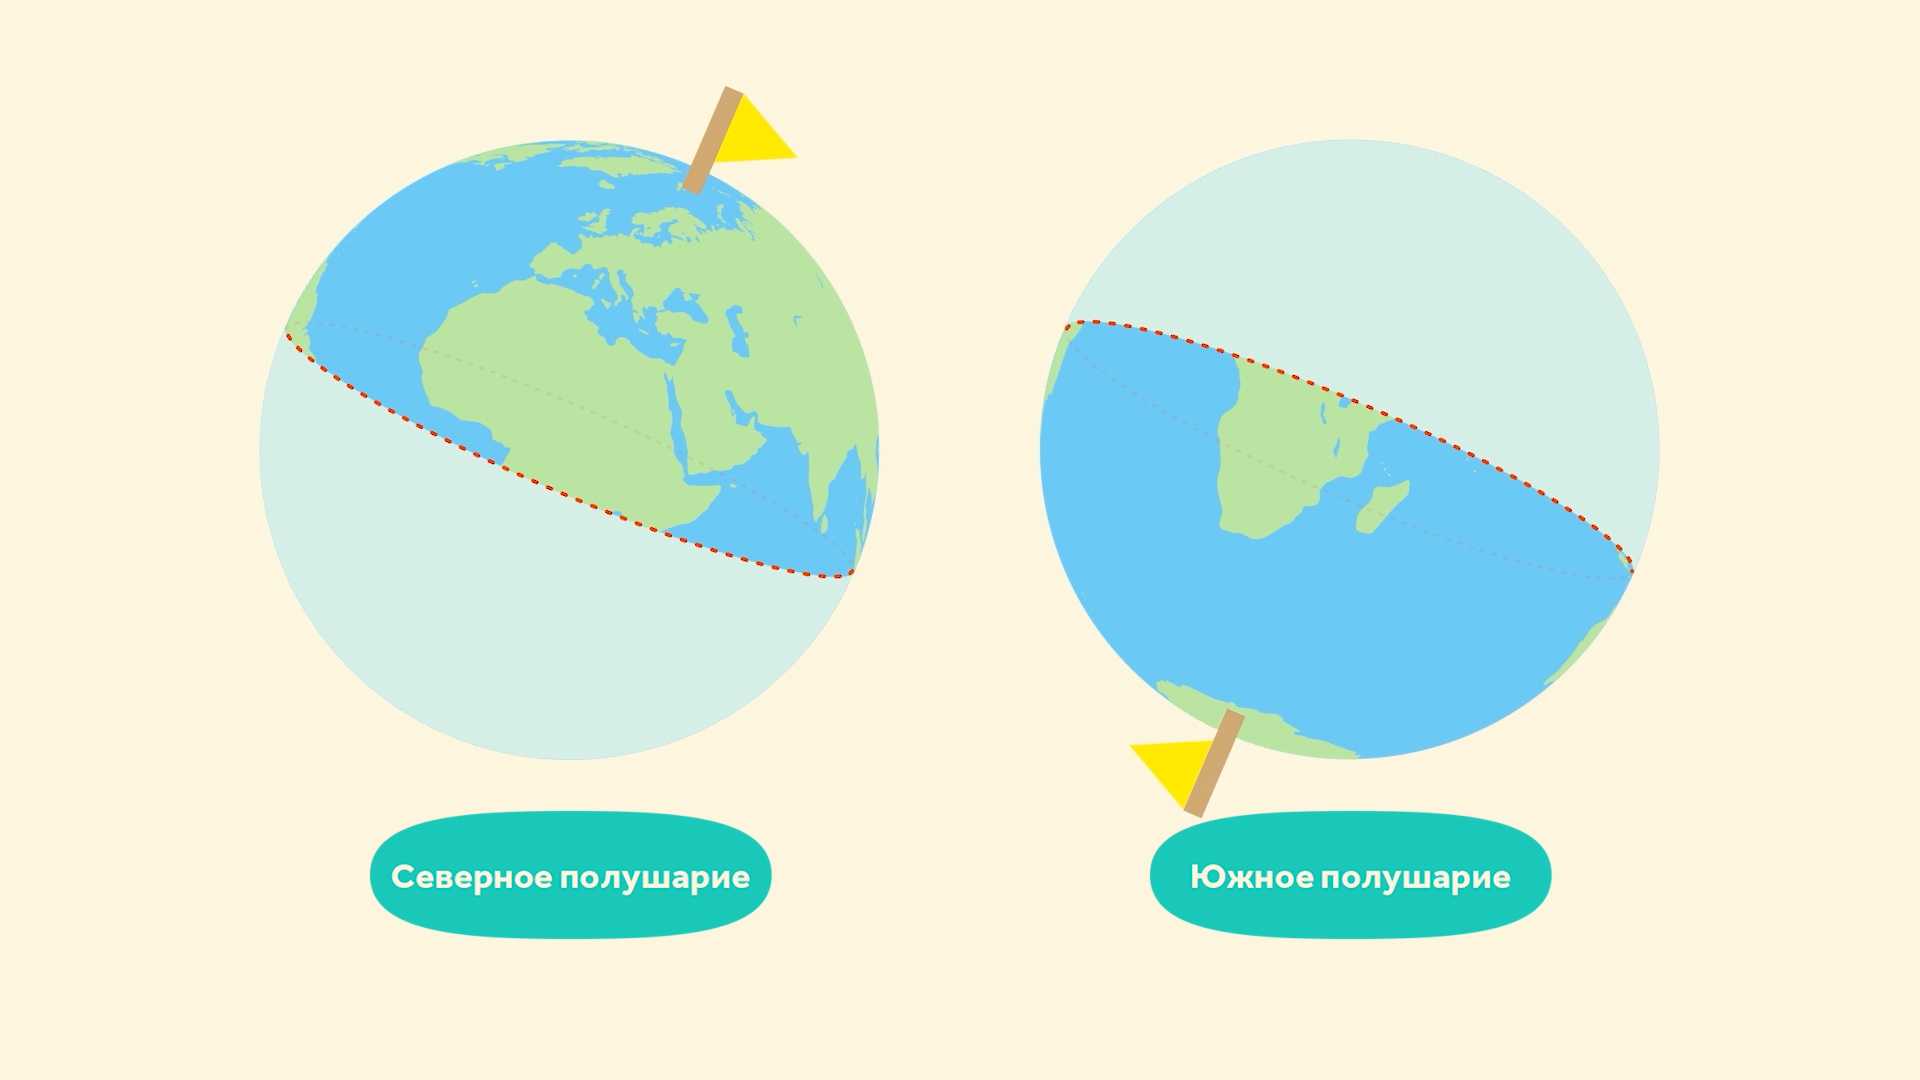 Параллели и меридианы  в географии, направления на глобусе, в чем различие